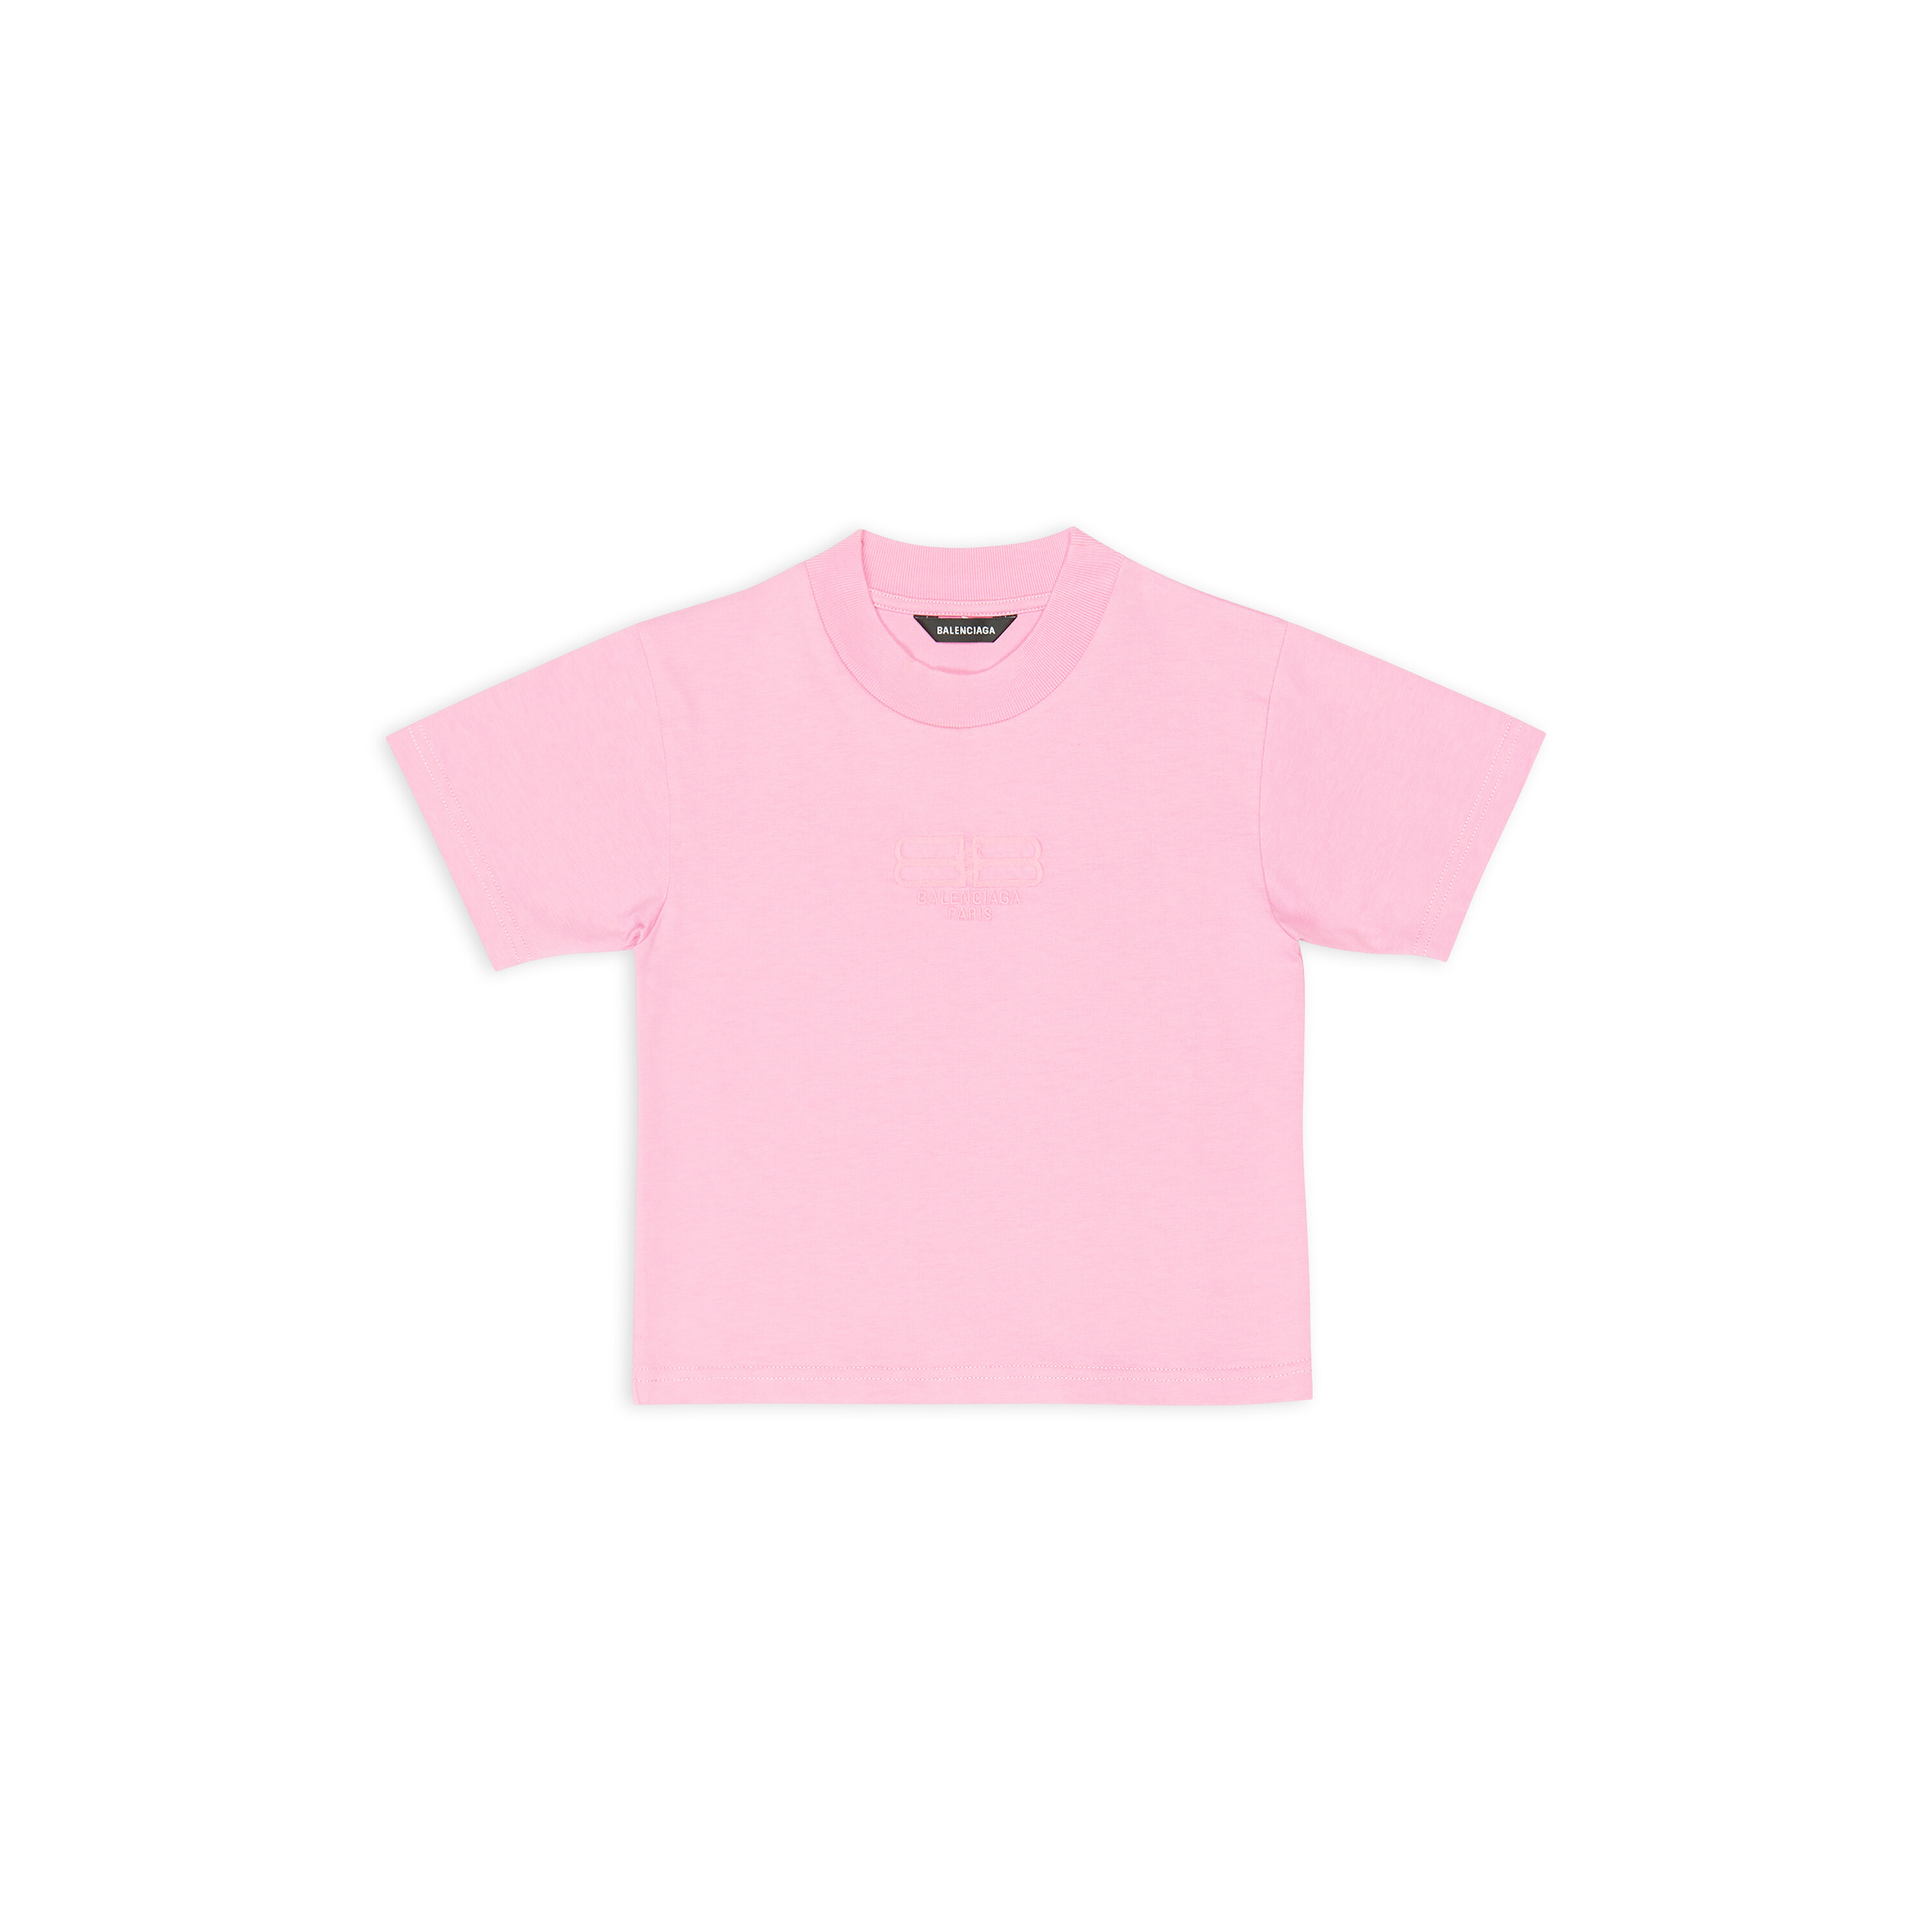 Balenciaga  LogoEmbroidered CottonJersey TShirt  Pink Balenciaga